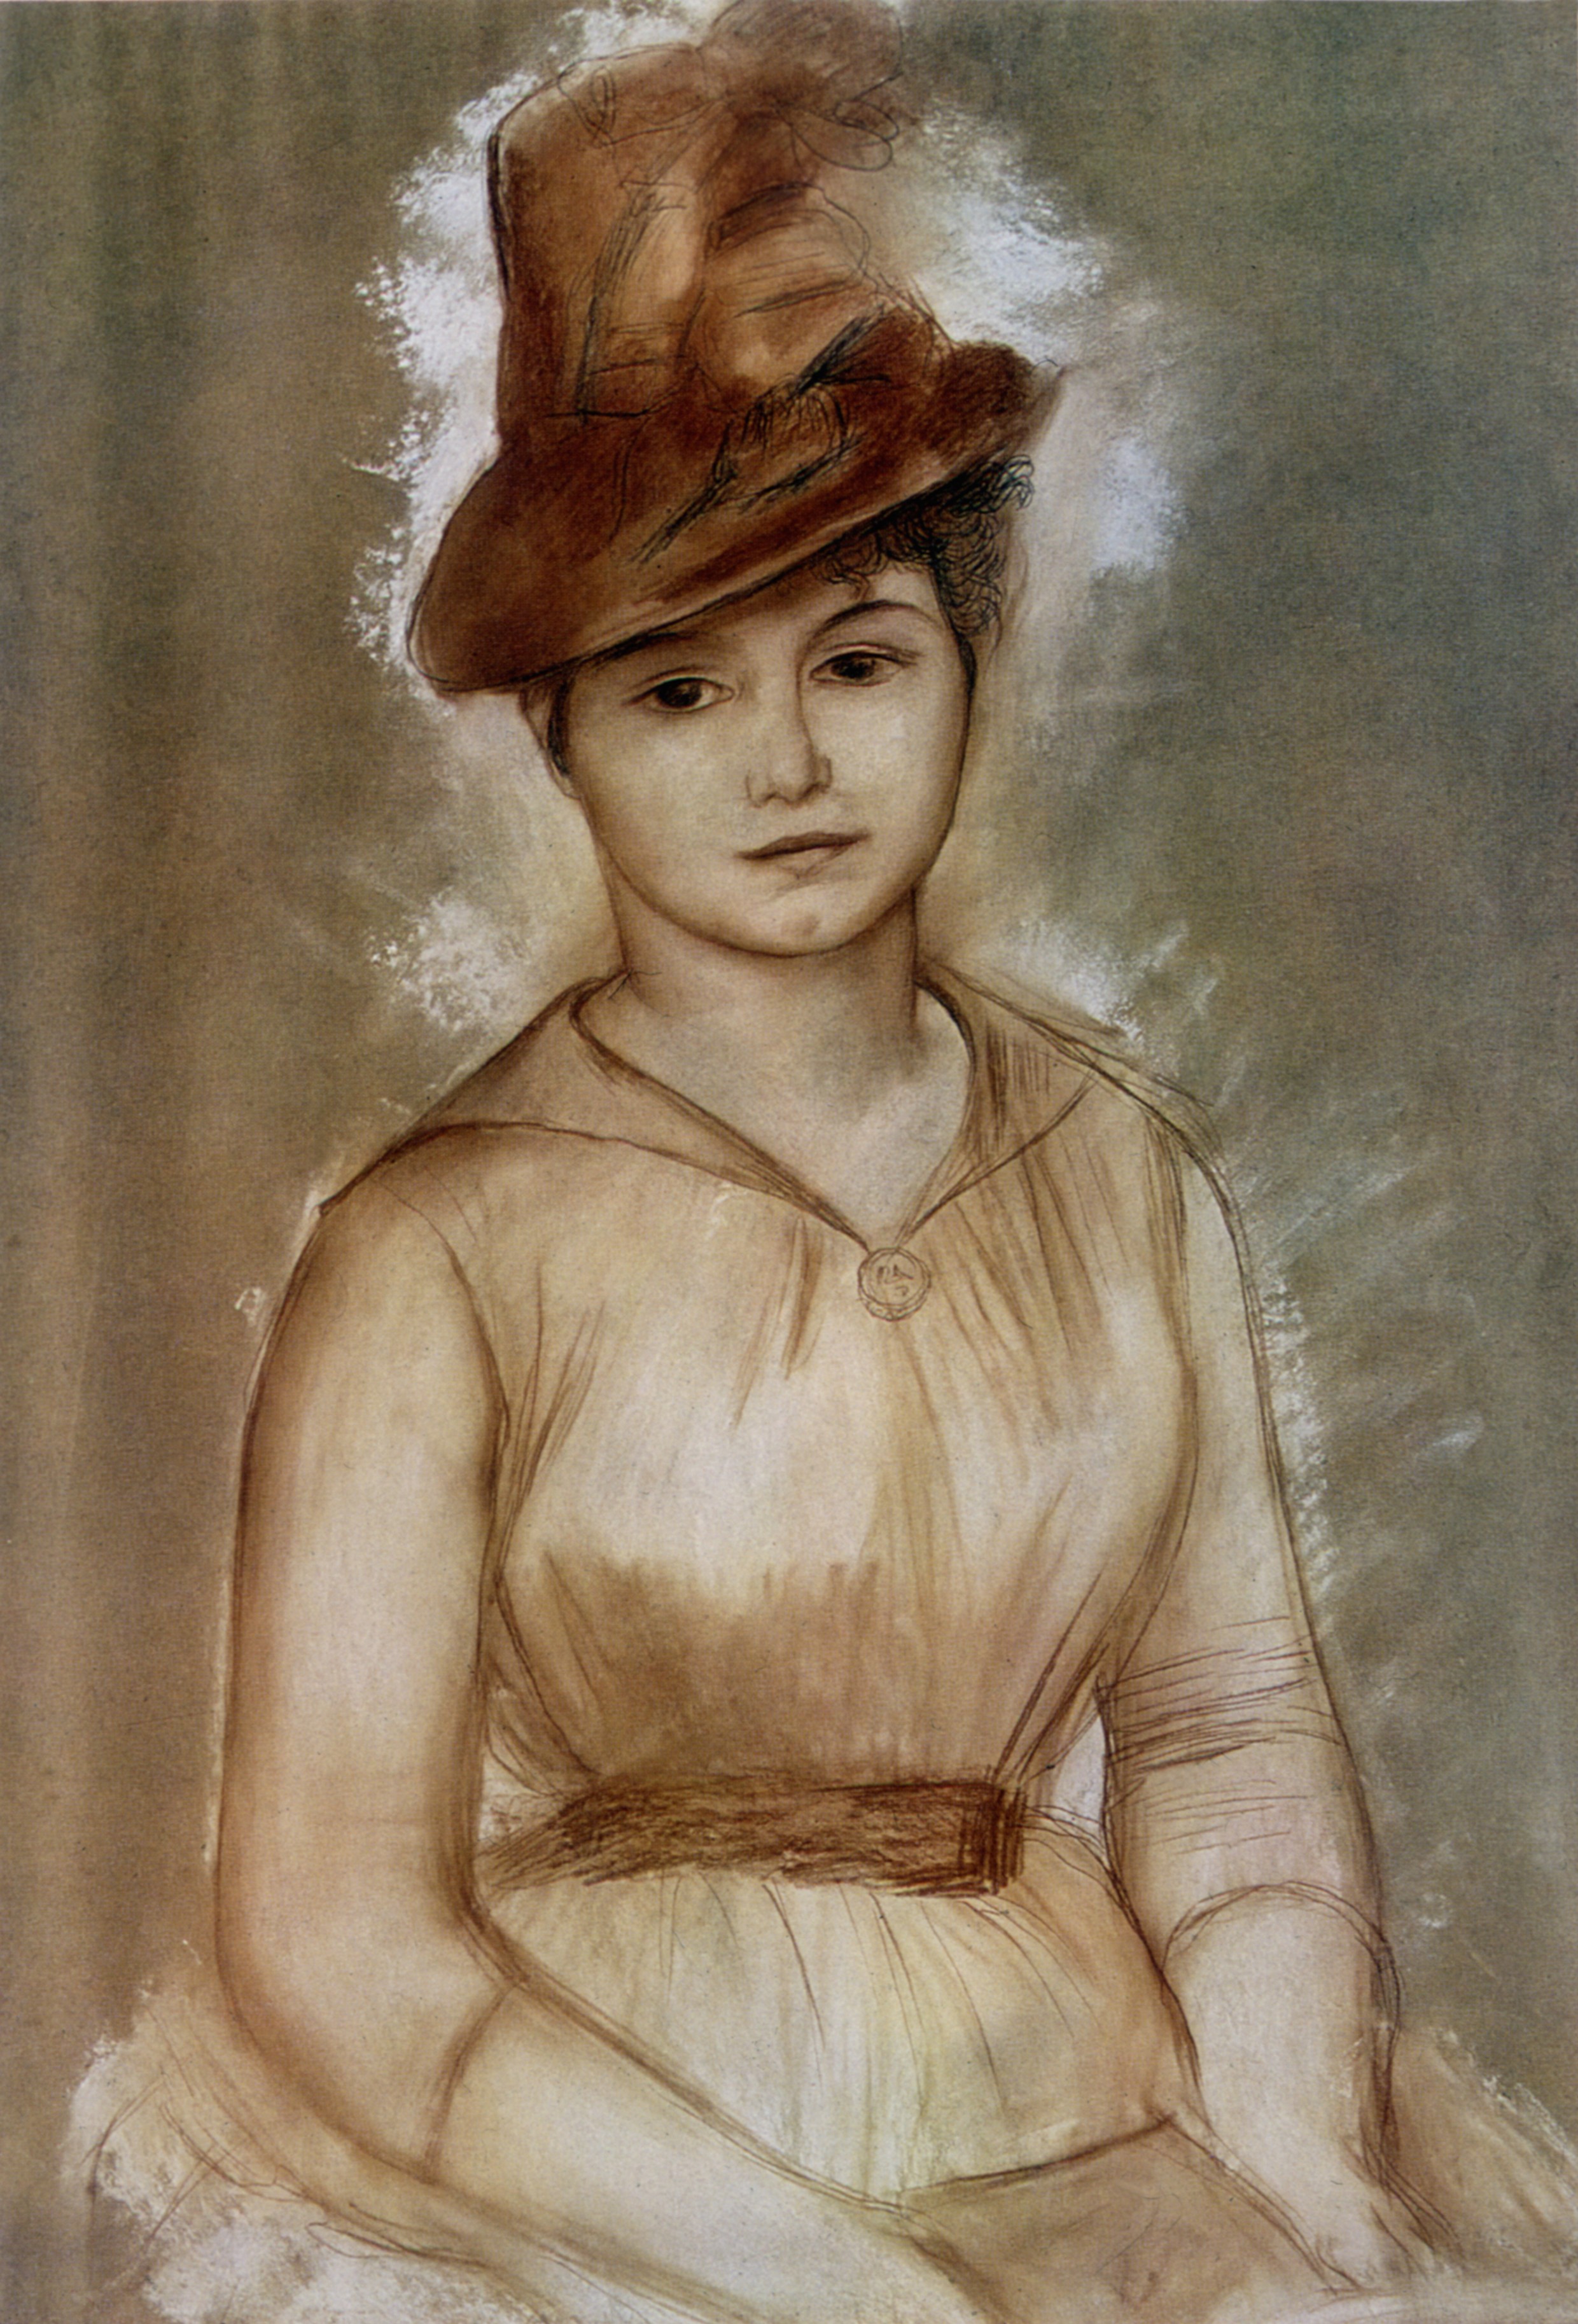 Ritratto di donna sconosciuta, 1885. Olio su tela, 79 x 57,5 cm. Museum of Fine Arts, New York. Credito: Photo12/contrasto